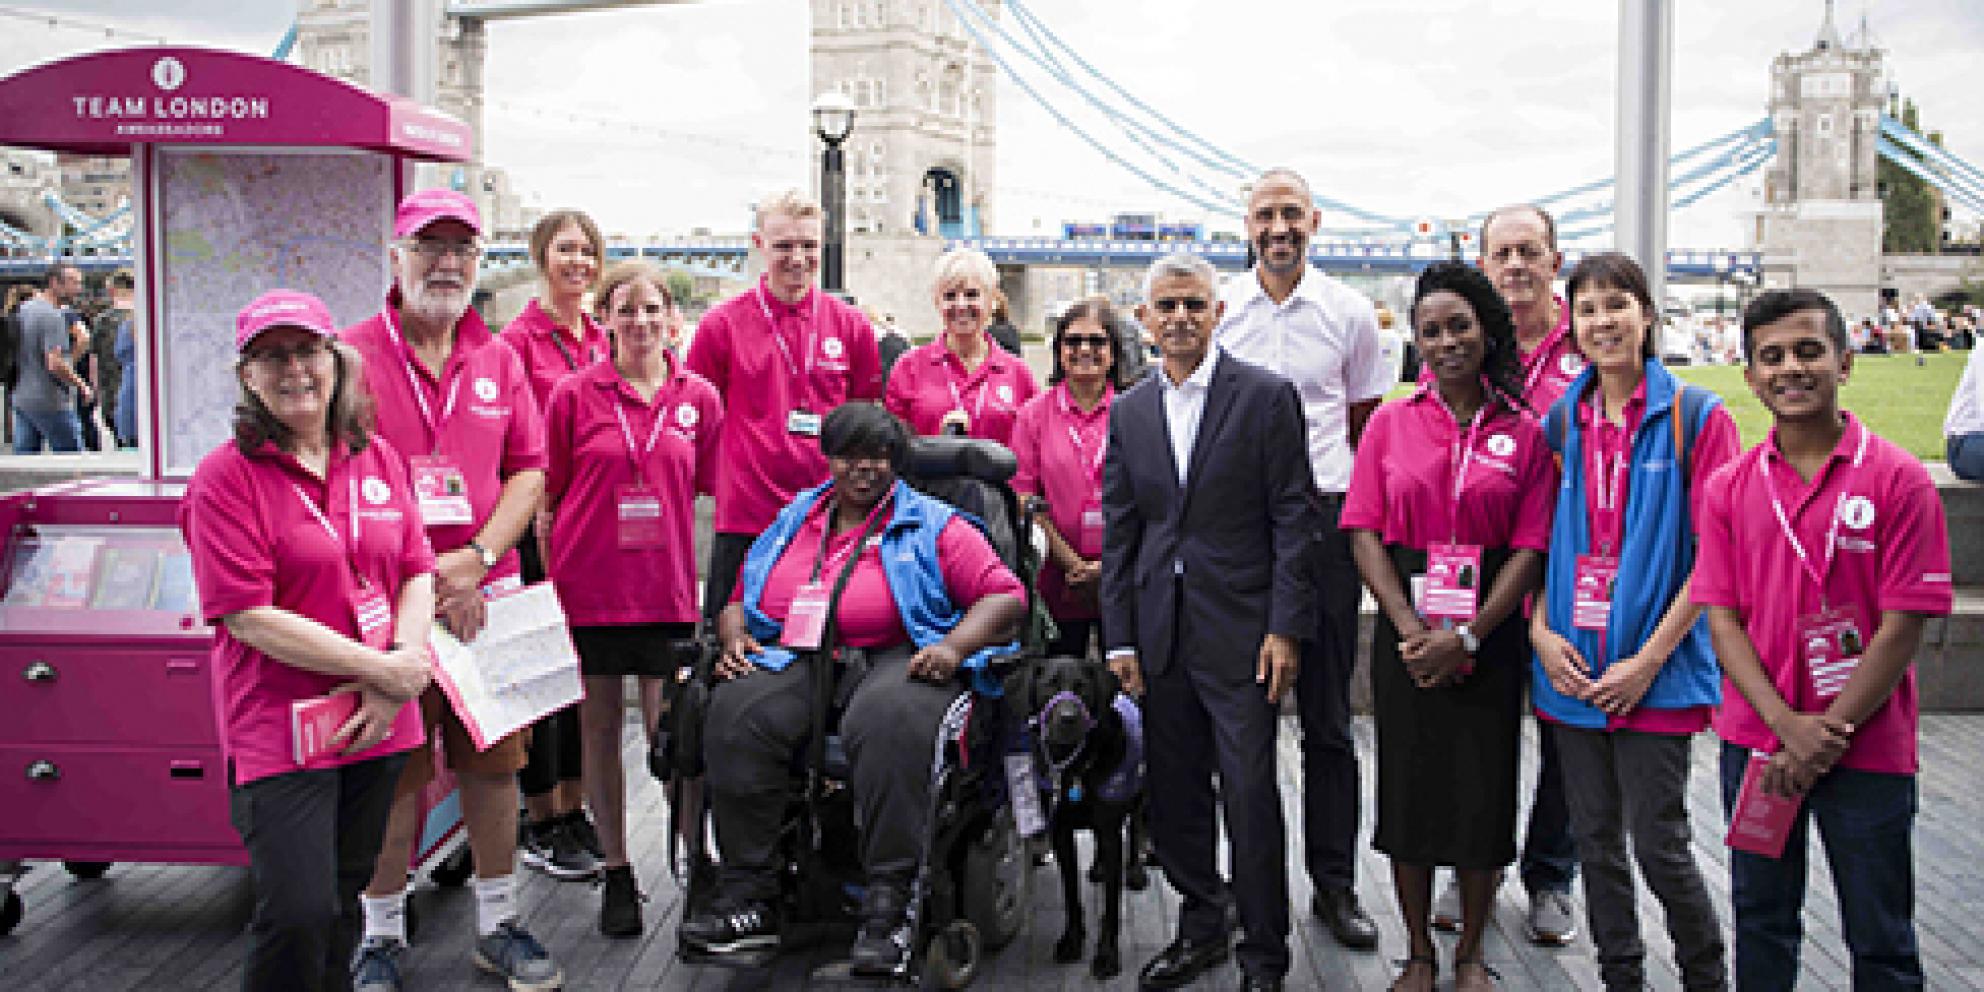 The Mayor Sadiq Khan surrounded by the Team London Ambassadors